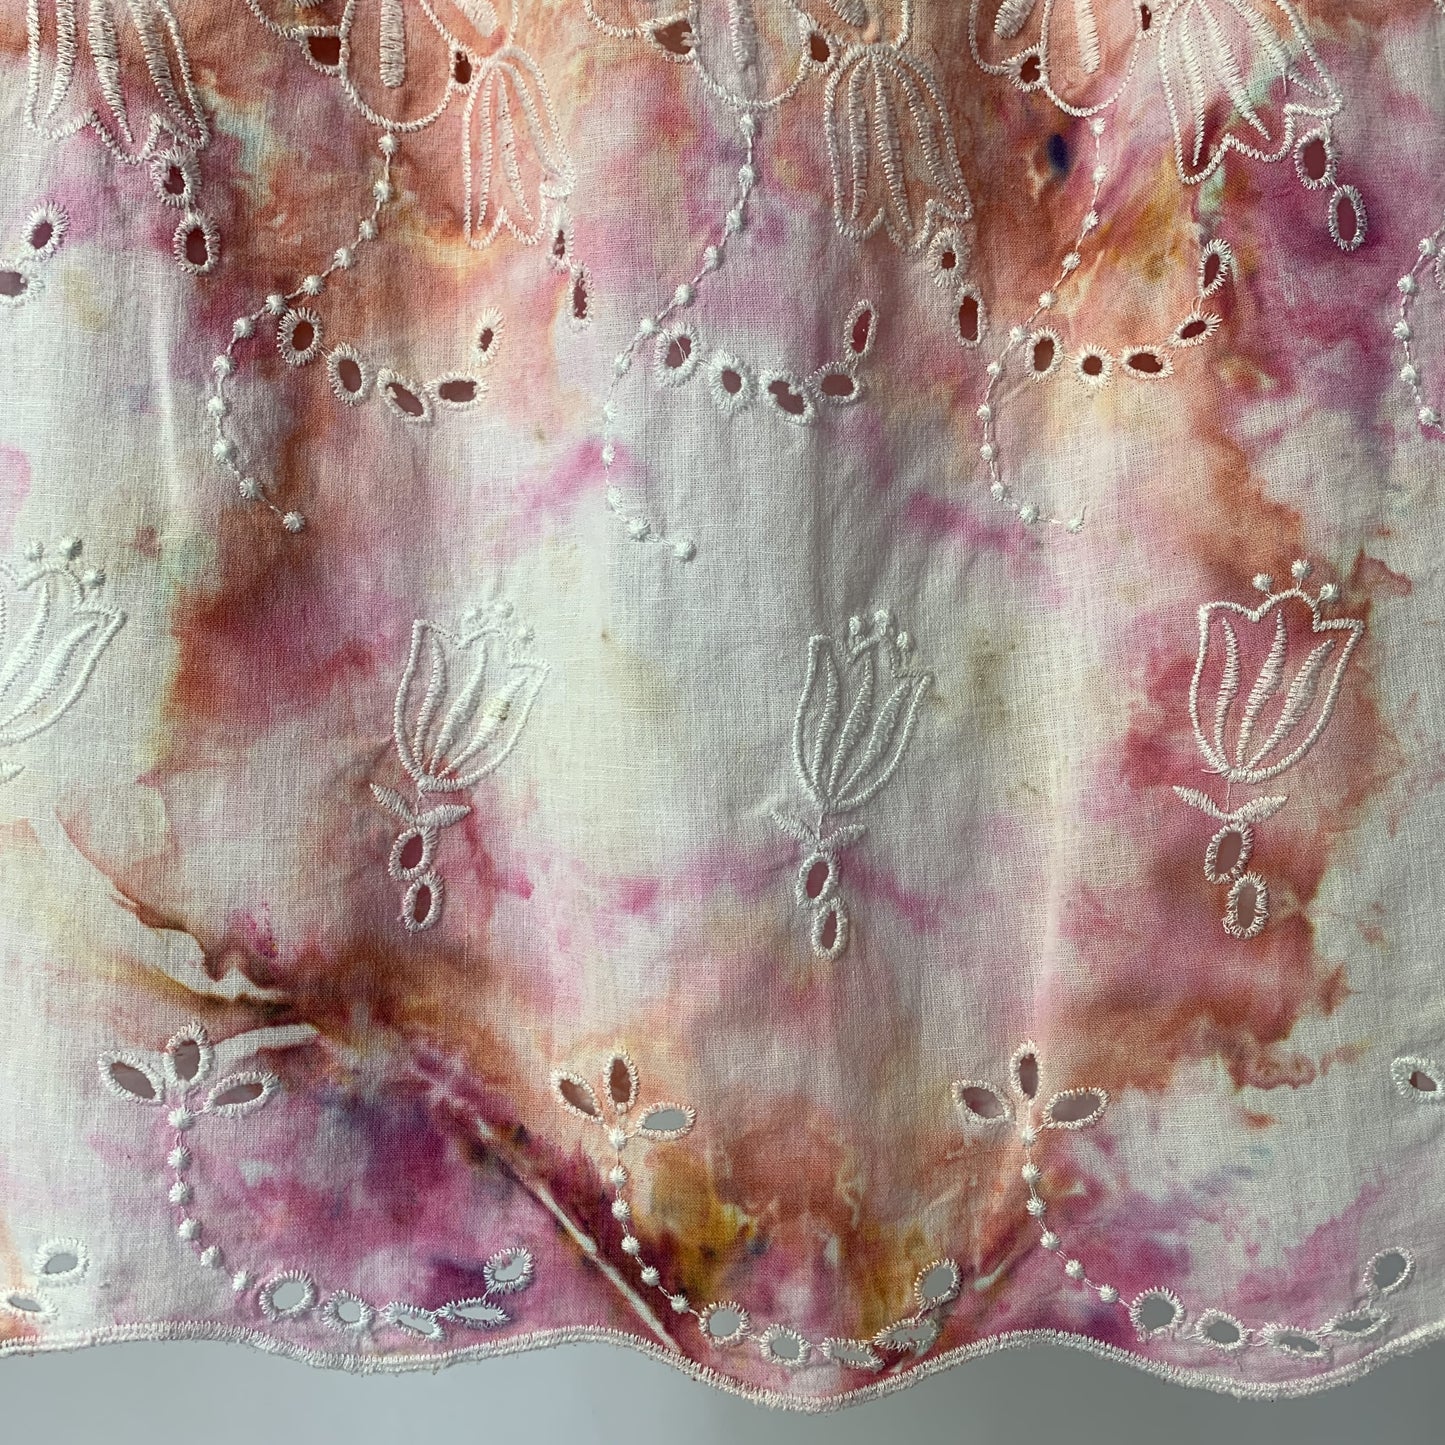 Floral Summer Sunset | Mid-length skirt | 30” waist